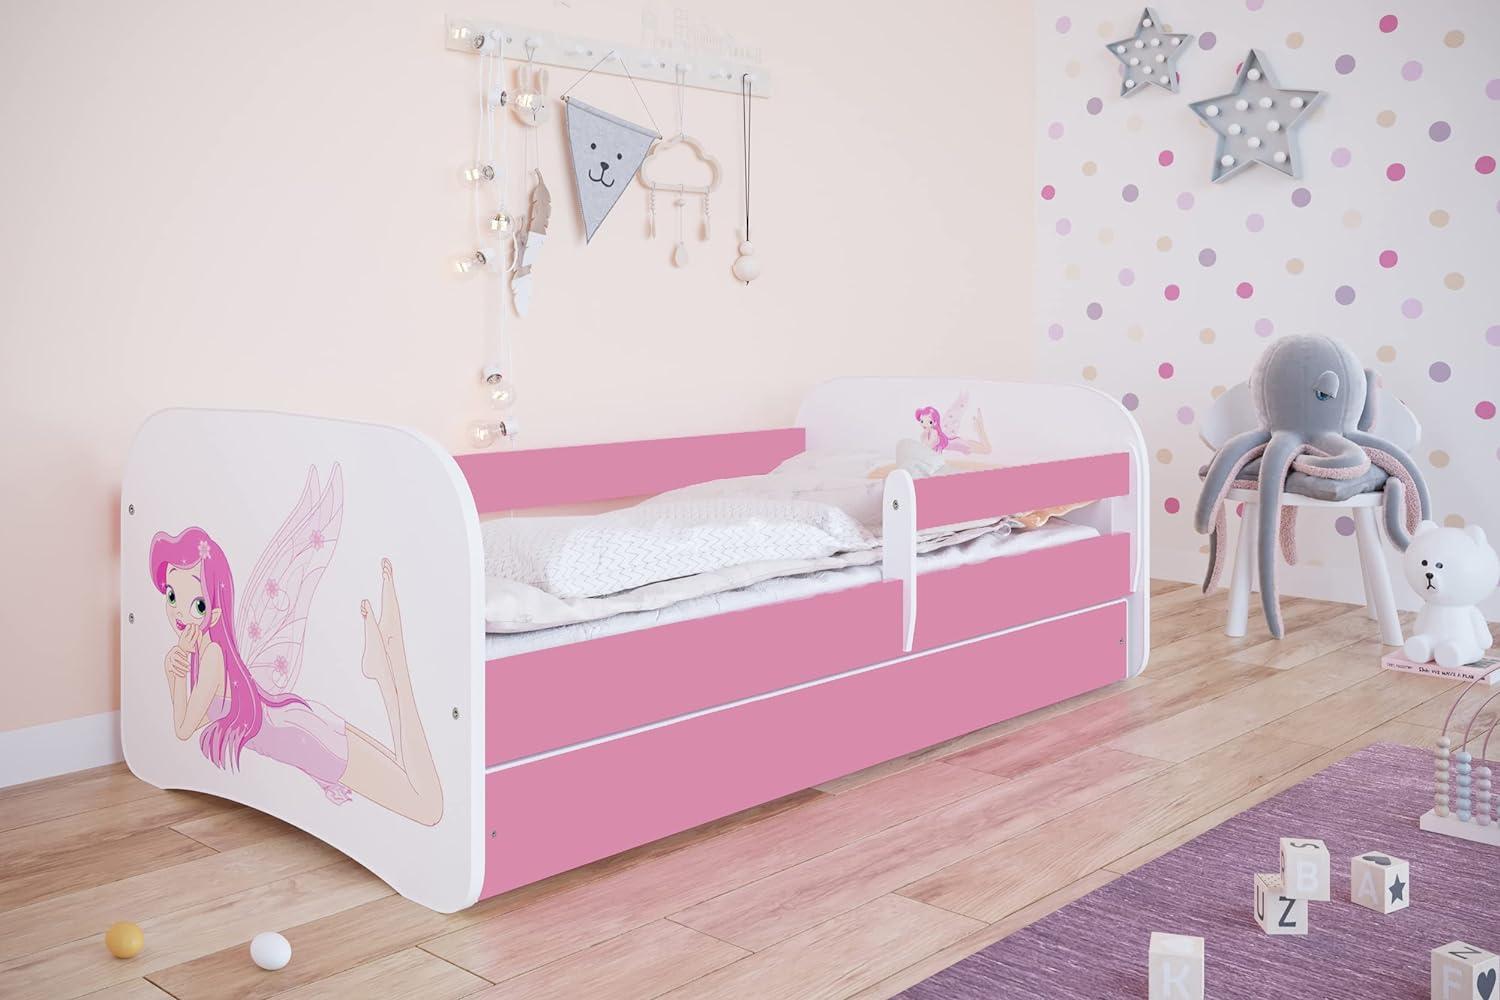 Kocot Kids 'Fee mit Flügeln' Einzelbett pink/weiß 80x160 cm inkl. Rausfallschutz, Matratze, Schublade und Lattenrost Bild 1